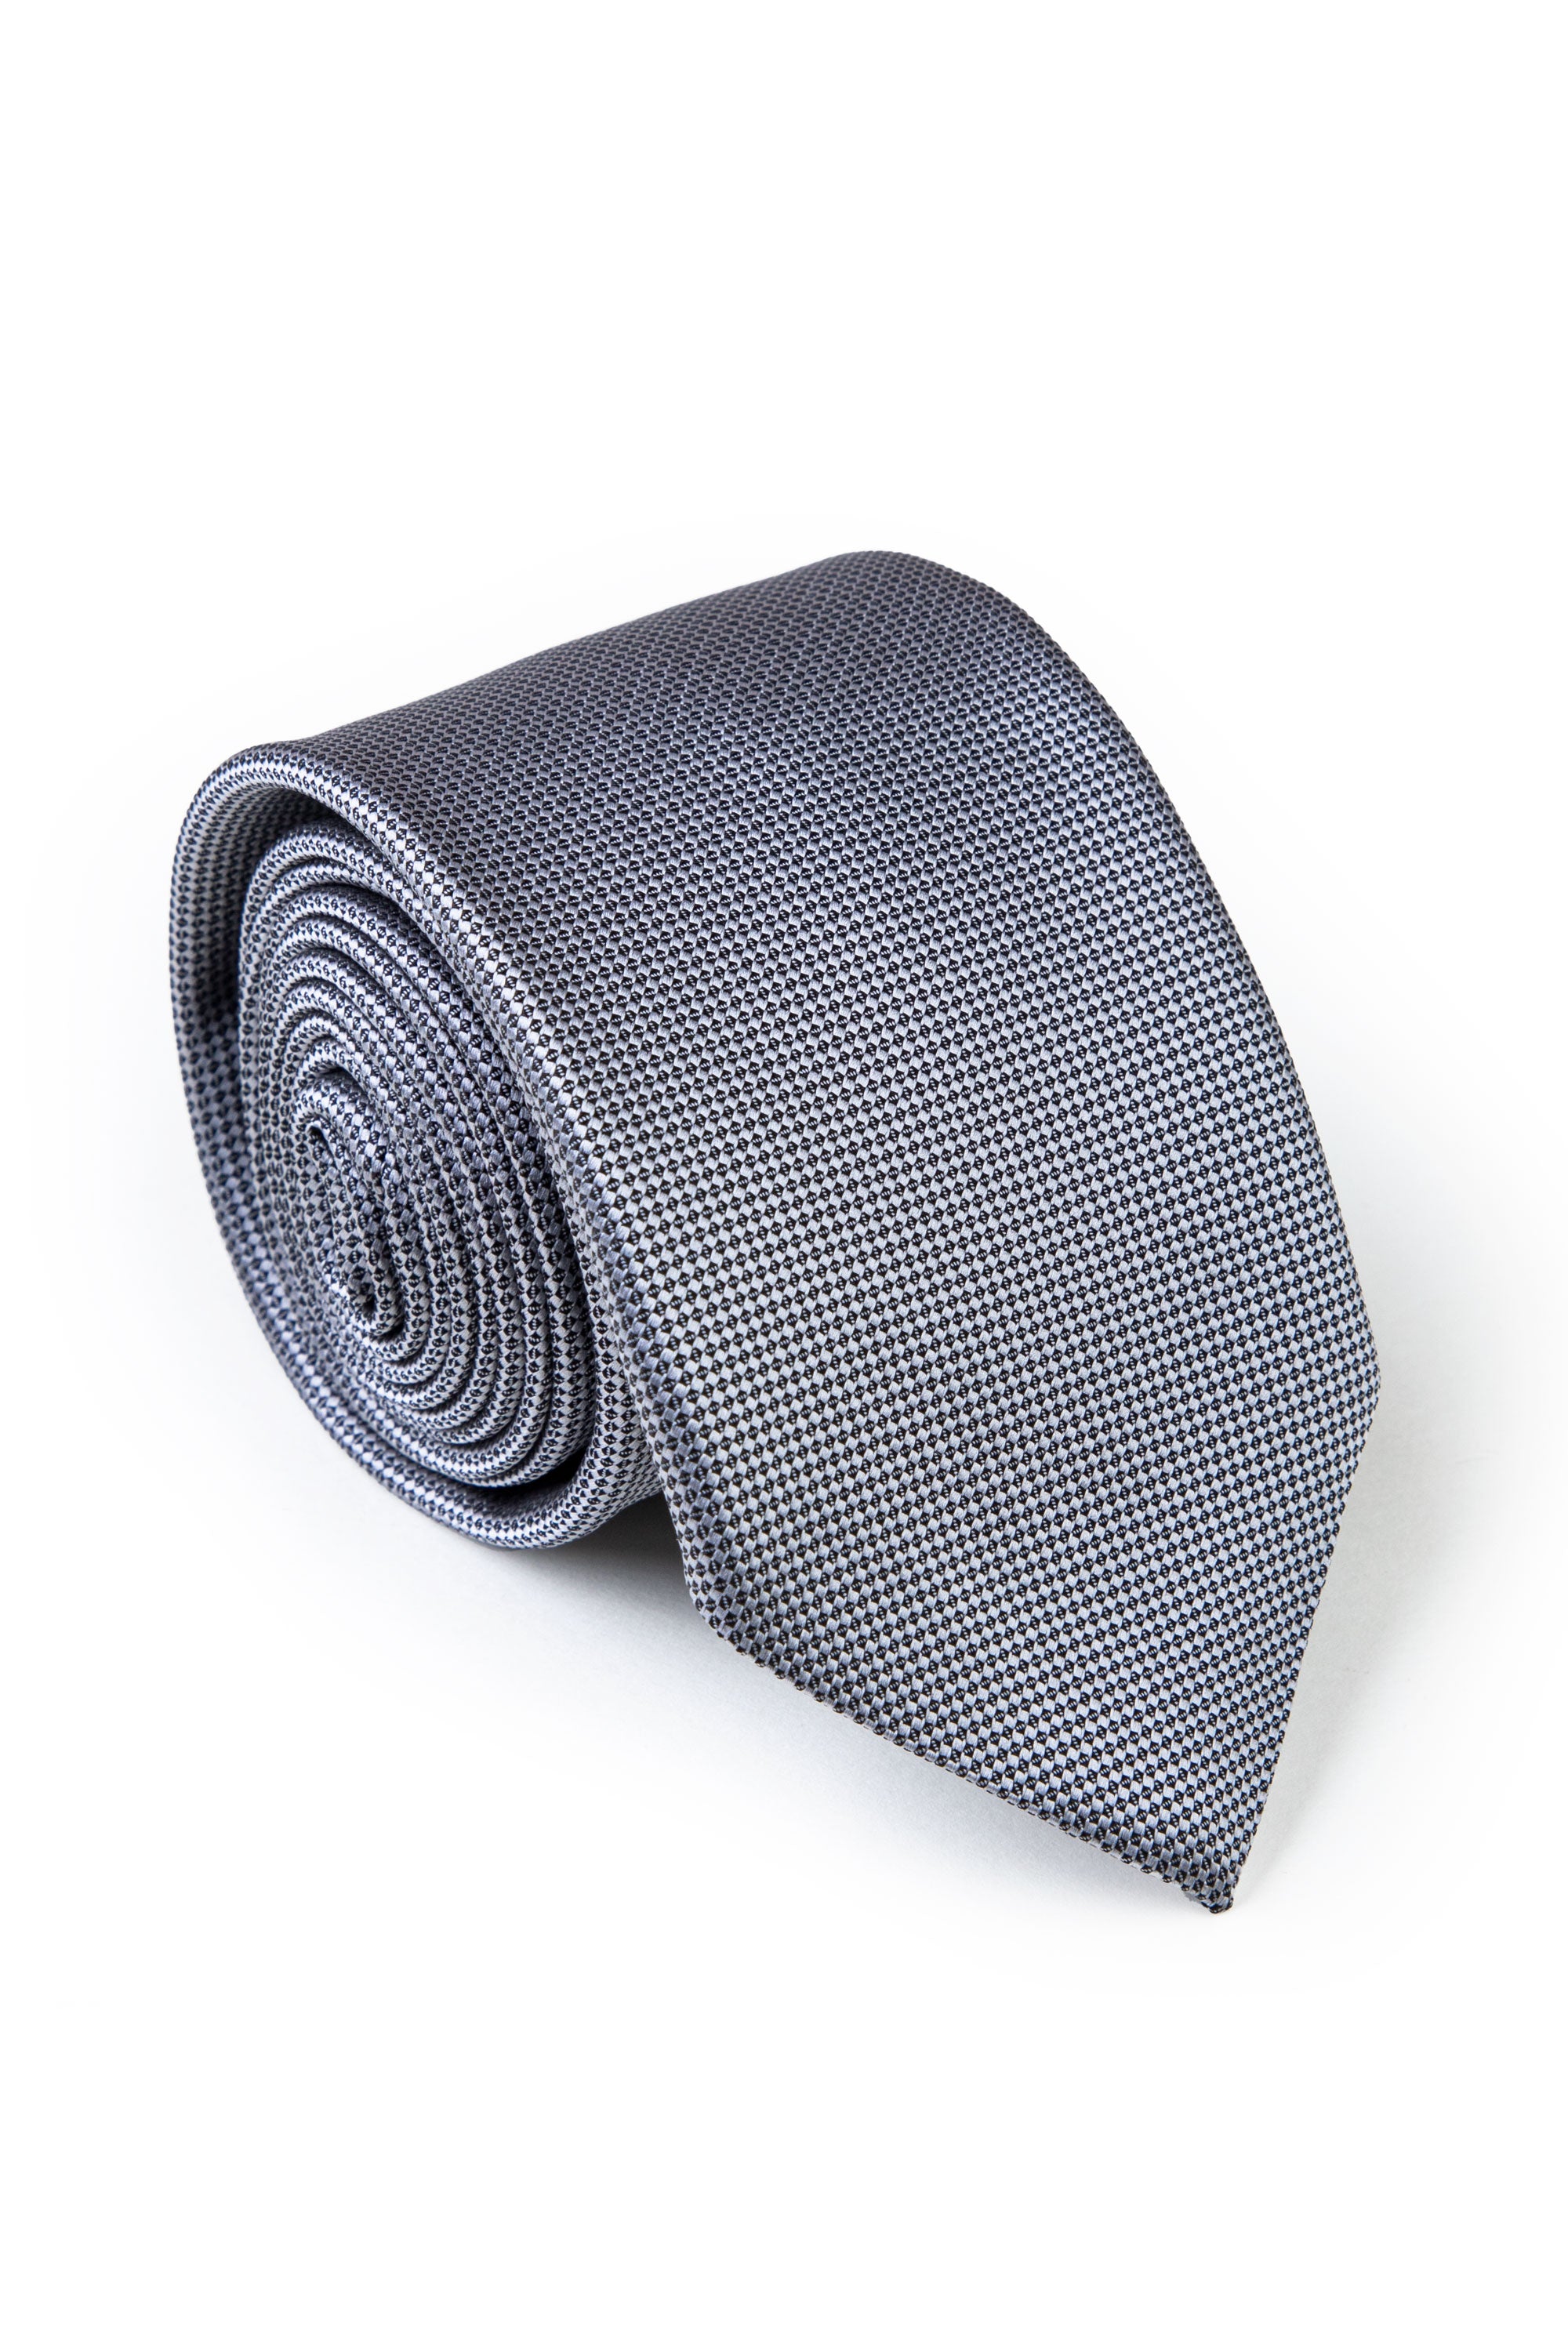 Formal Grey Tie Loose